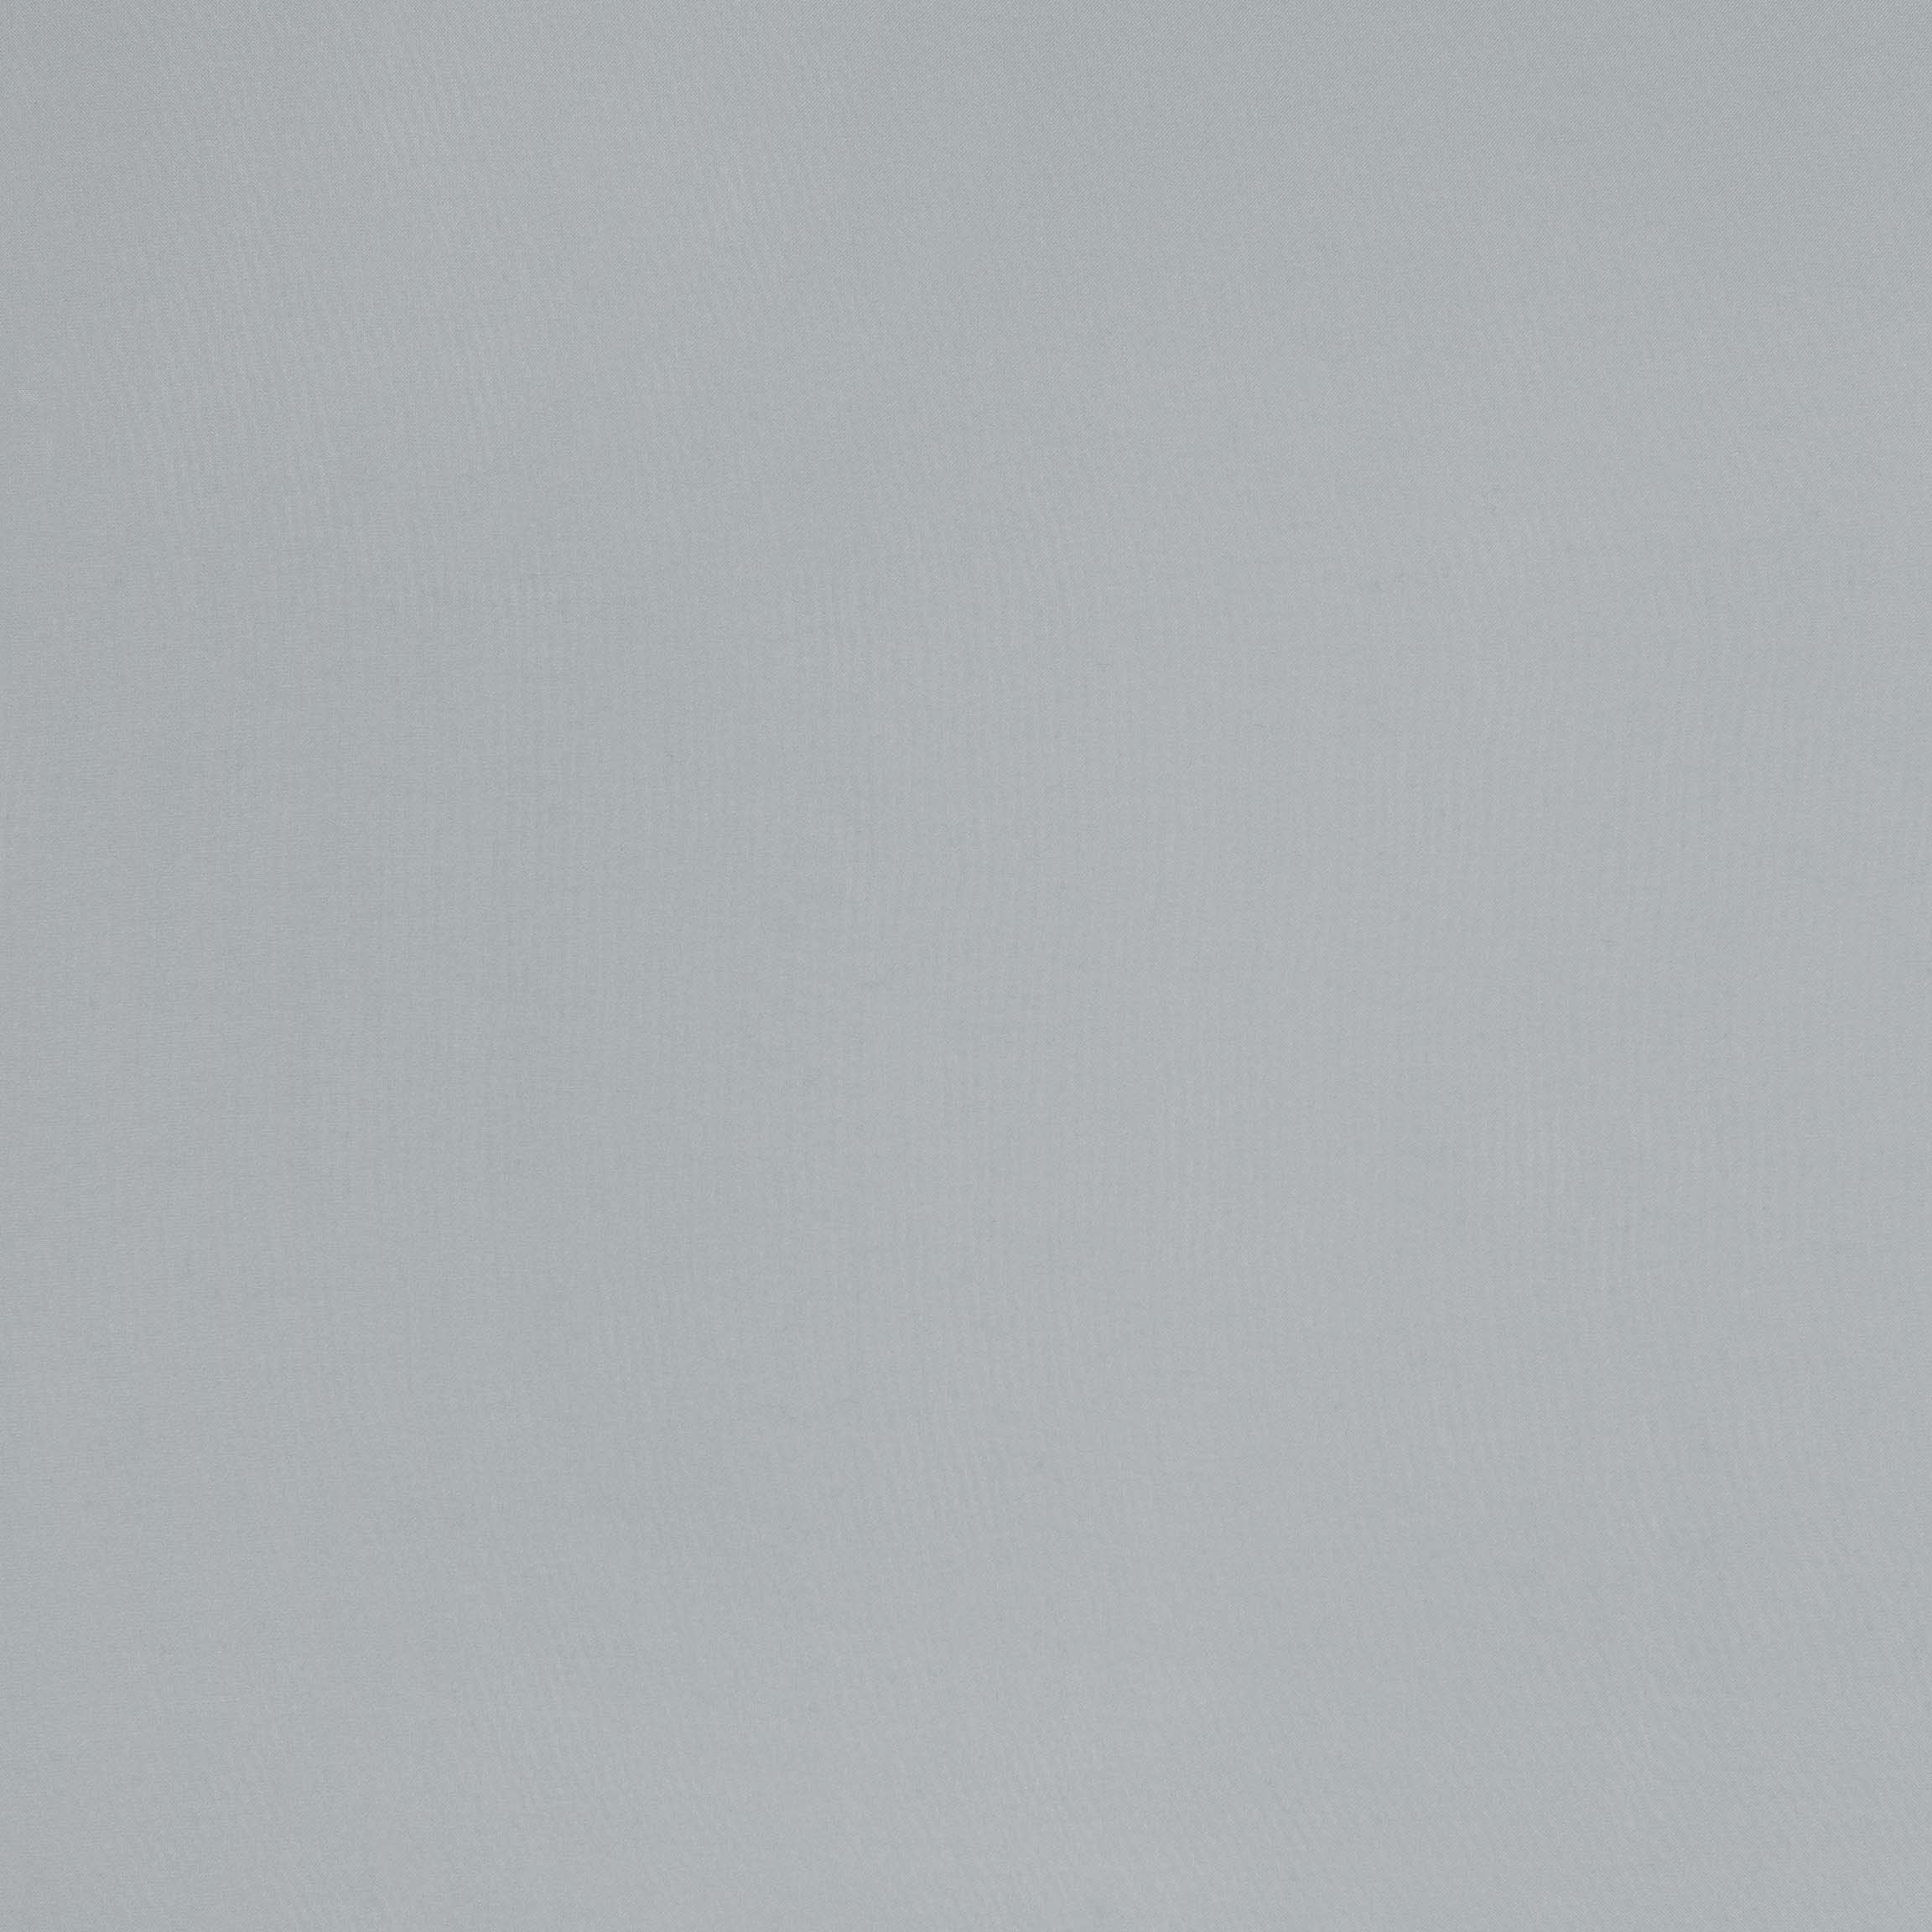  Тюль EDWIN GREY, ширина 315 см  - Фото